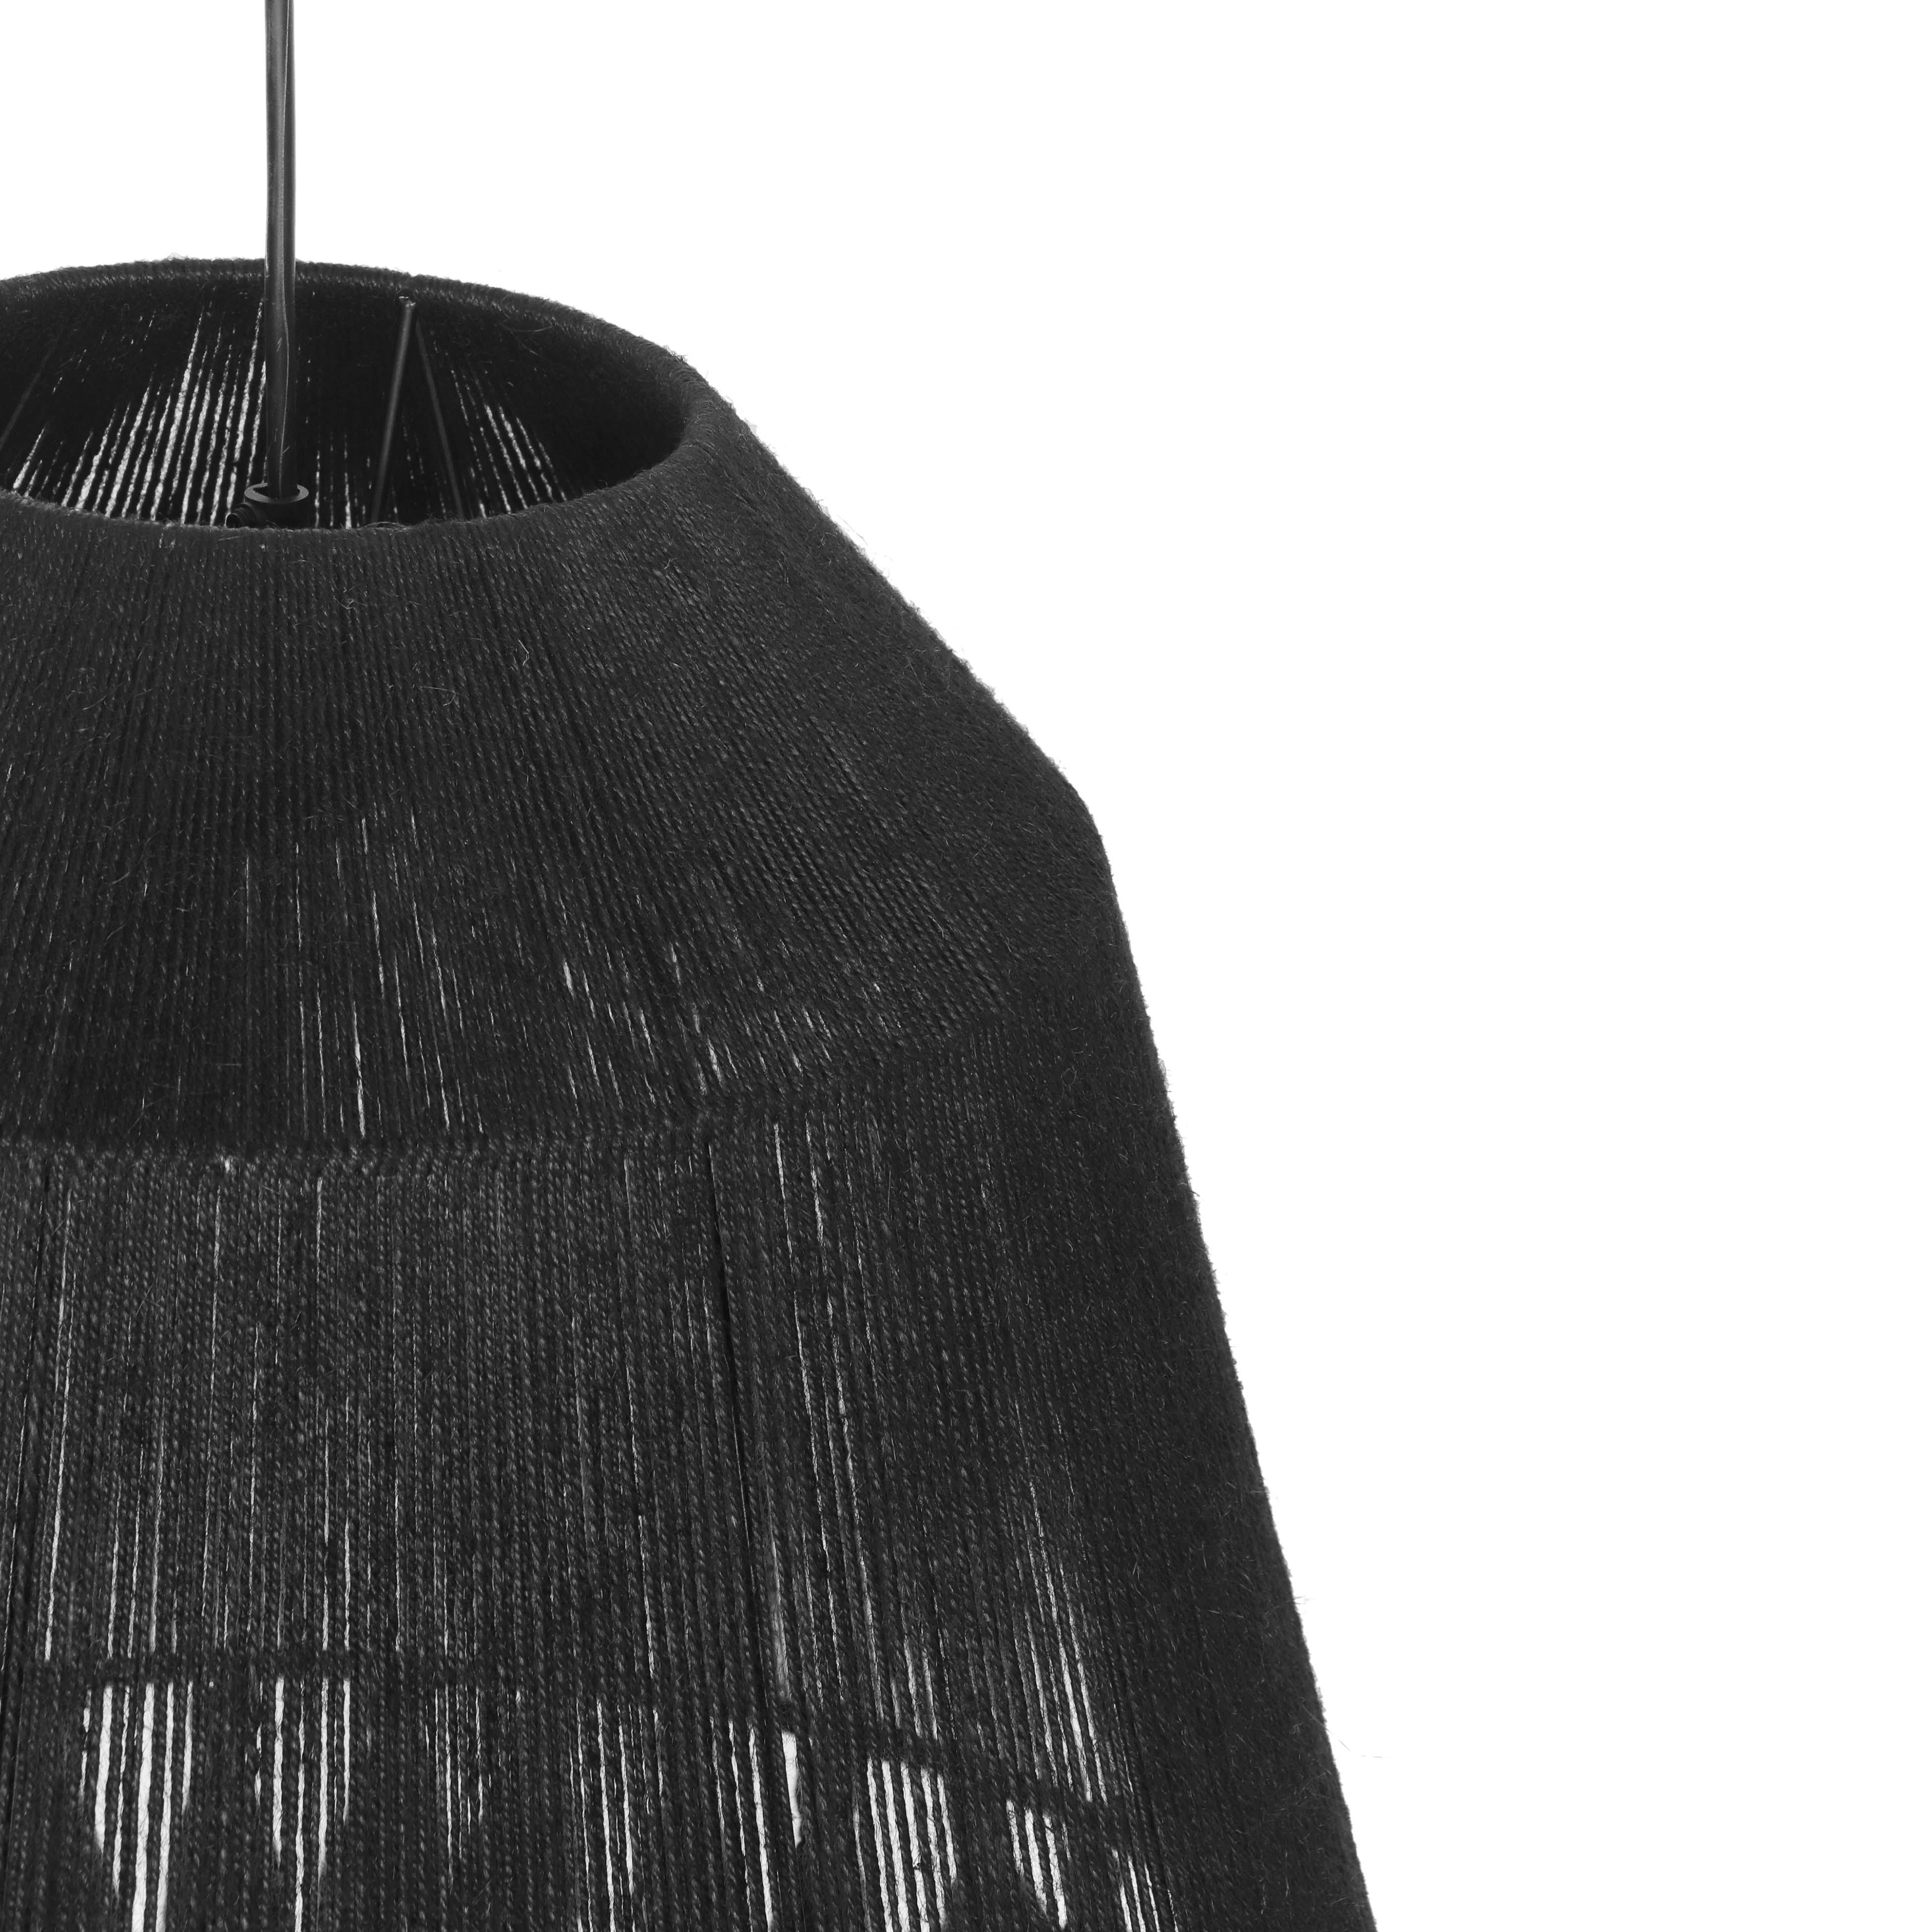 Bokaro Black Jute Large Pendant Lamp - Image 4